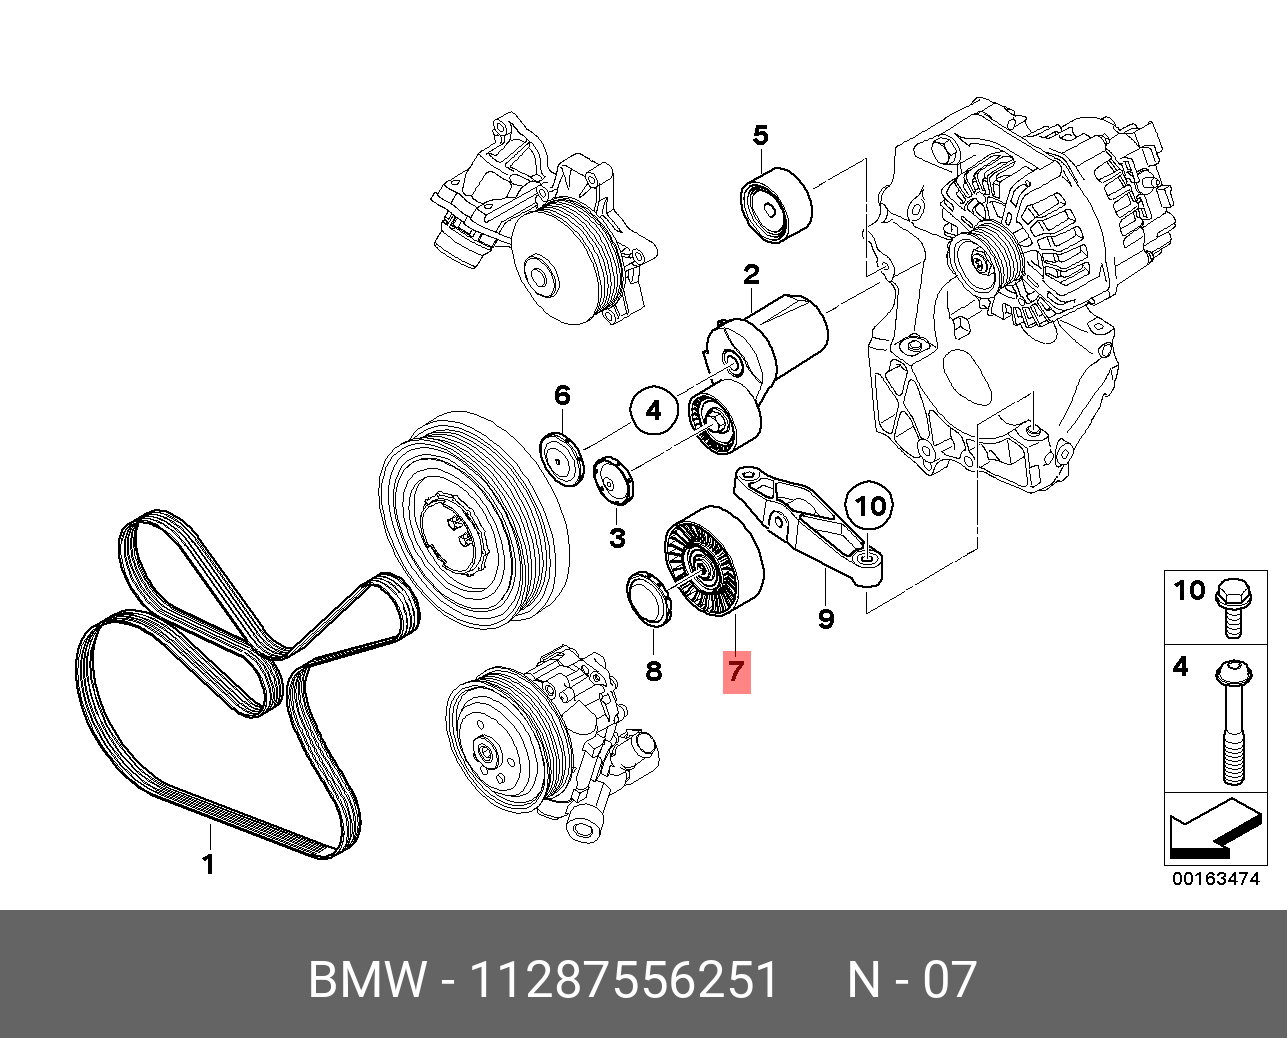 Ролик промежуточный навесного оборудования - BMW 11 28 7 556 251